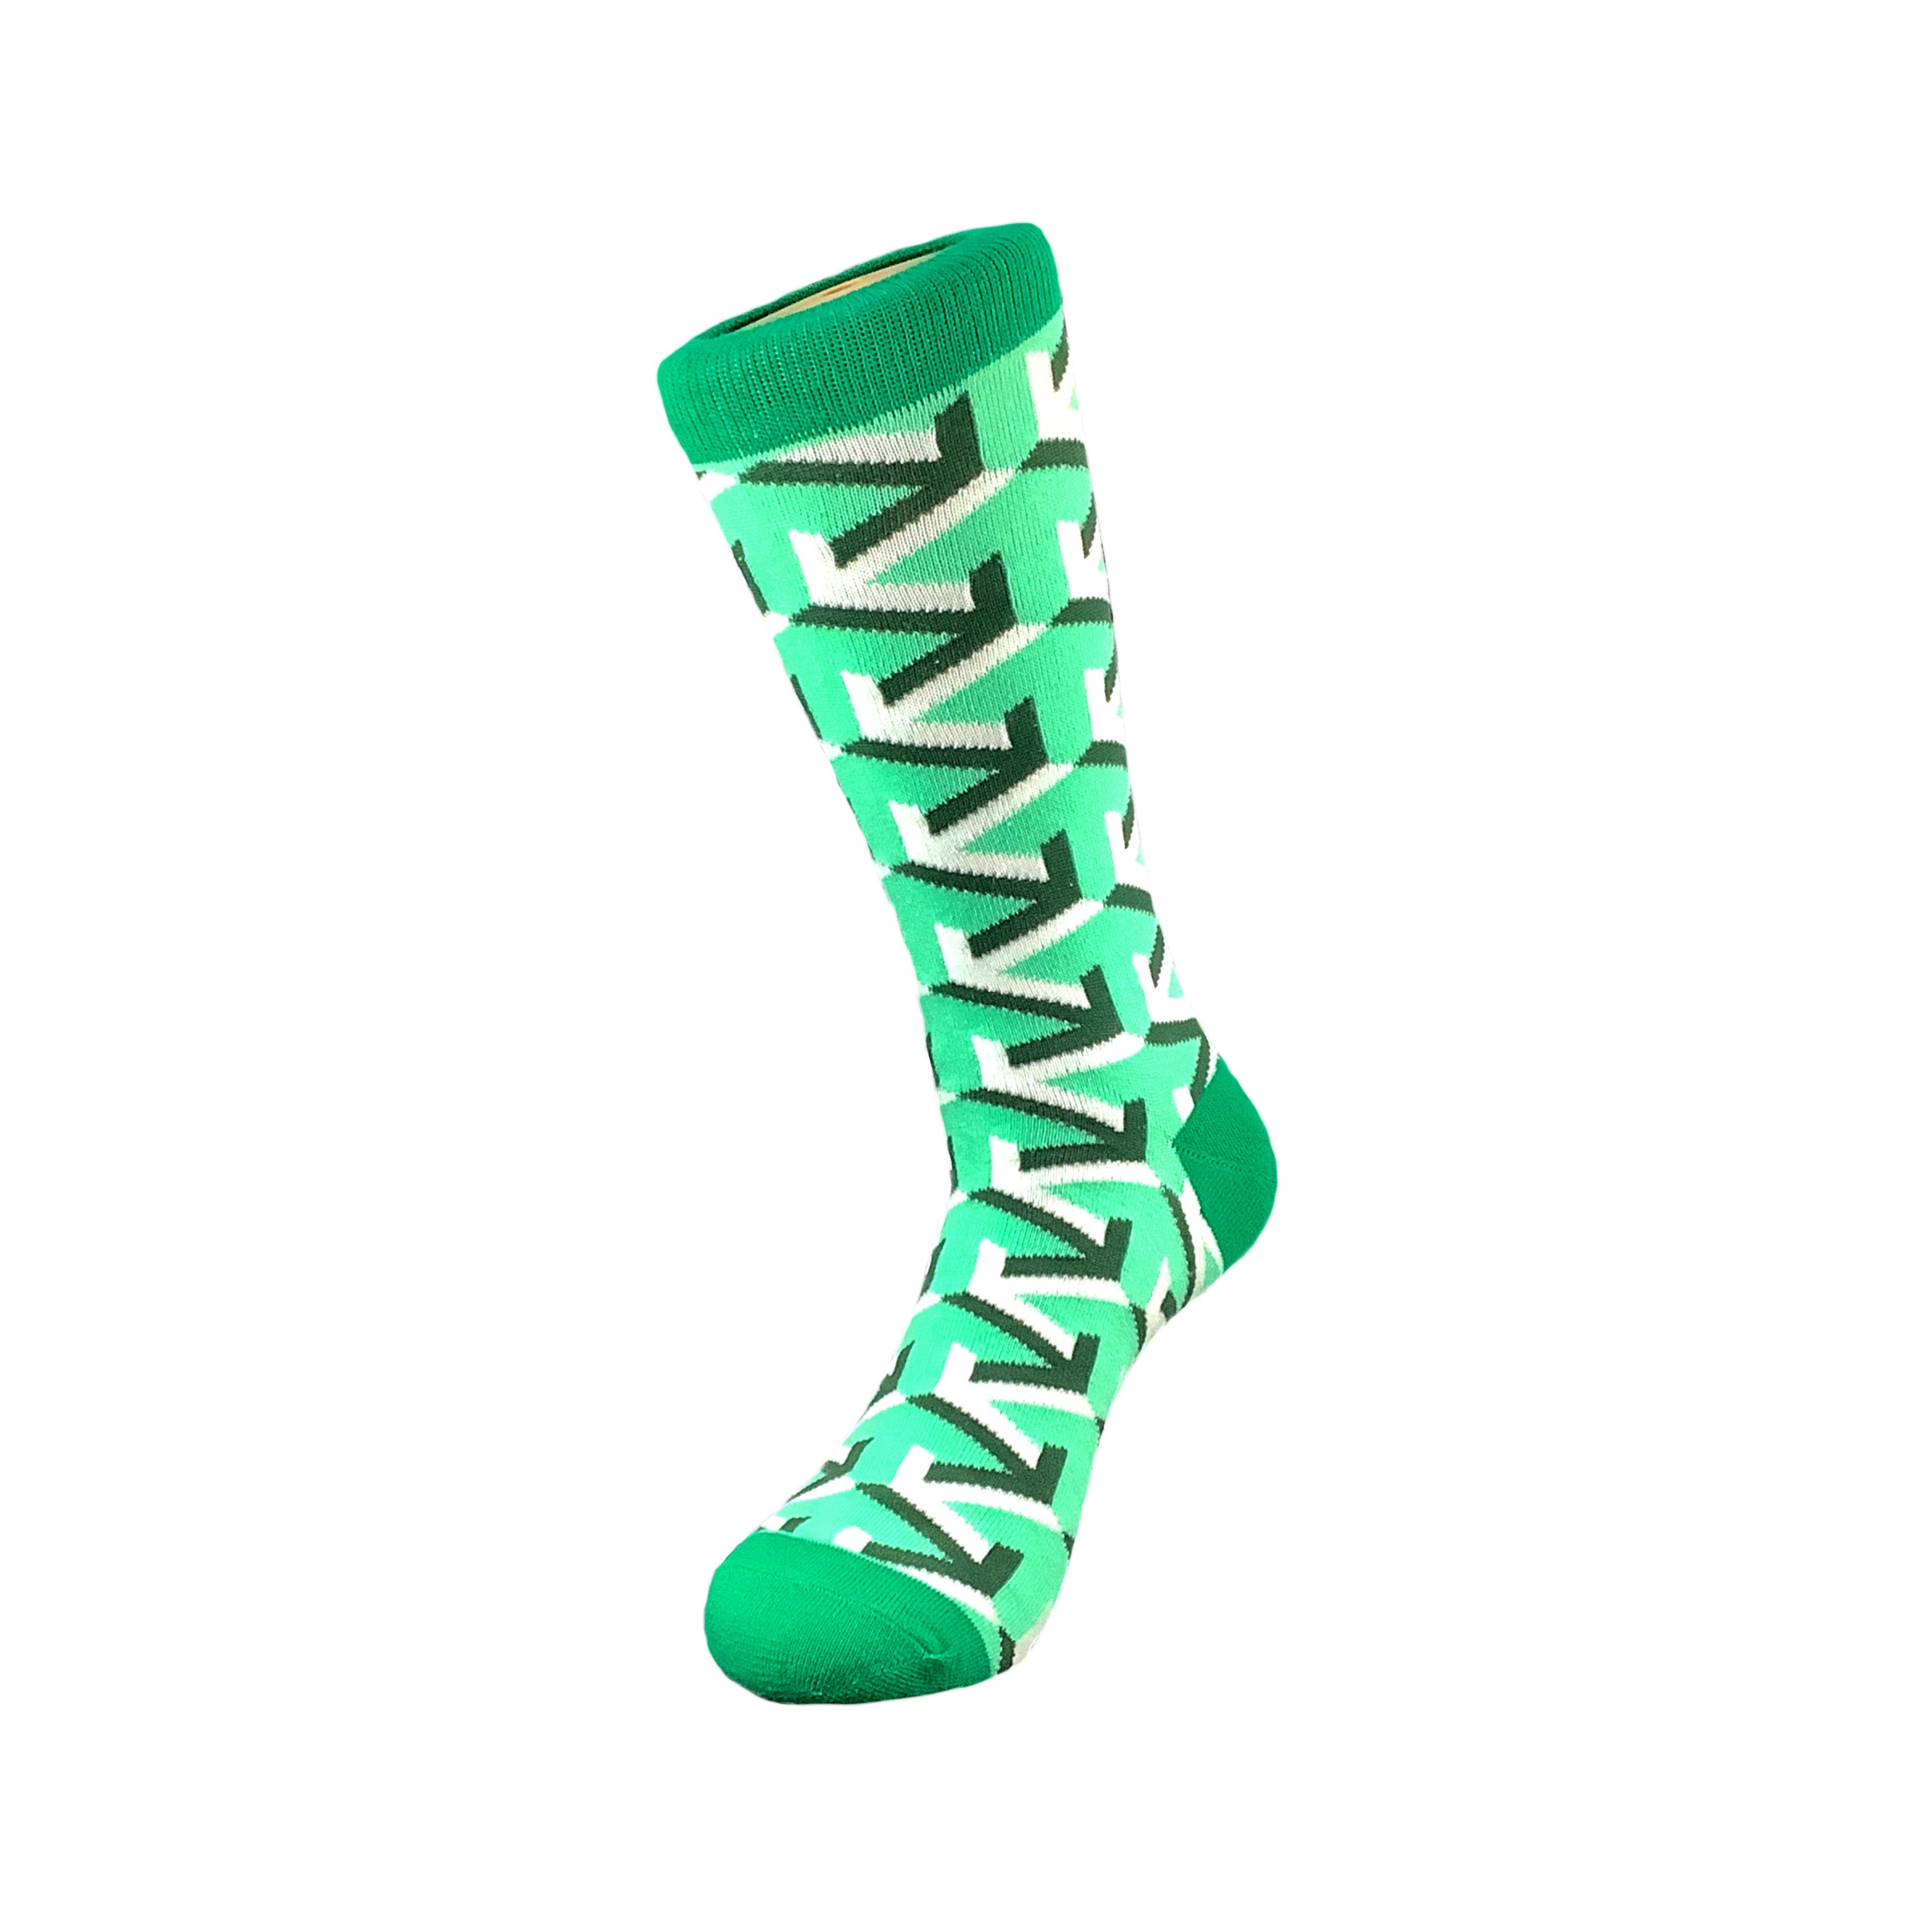 Classy Green Geometric Arrow Socks from the Sock Panda